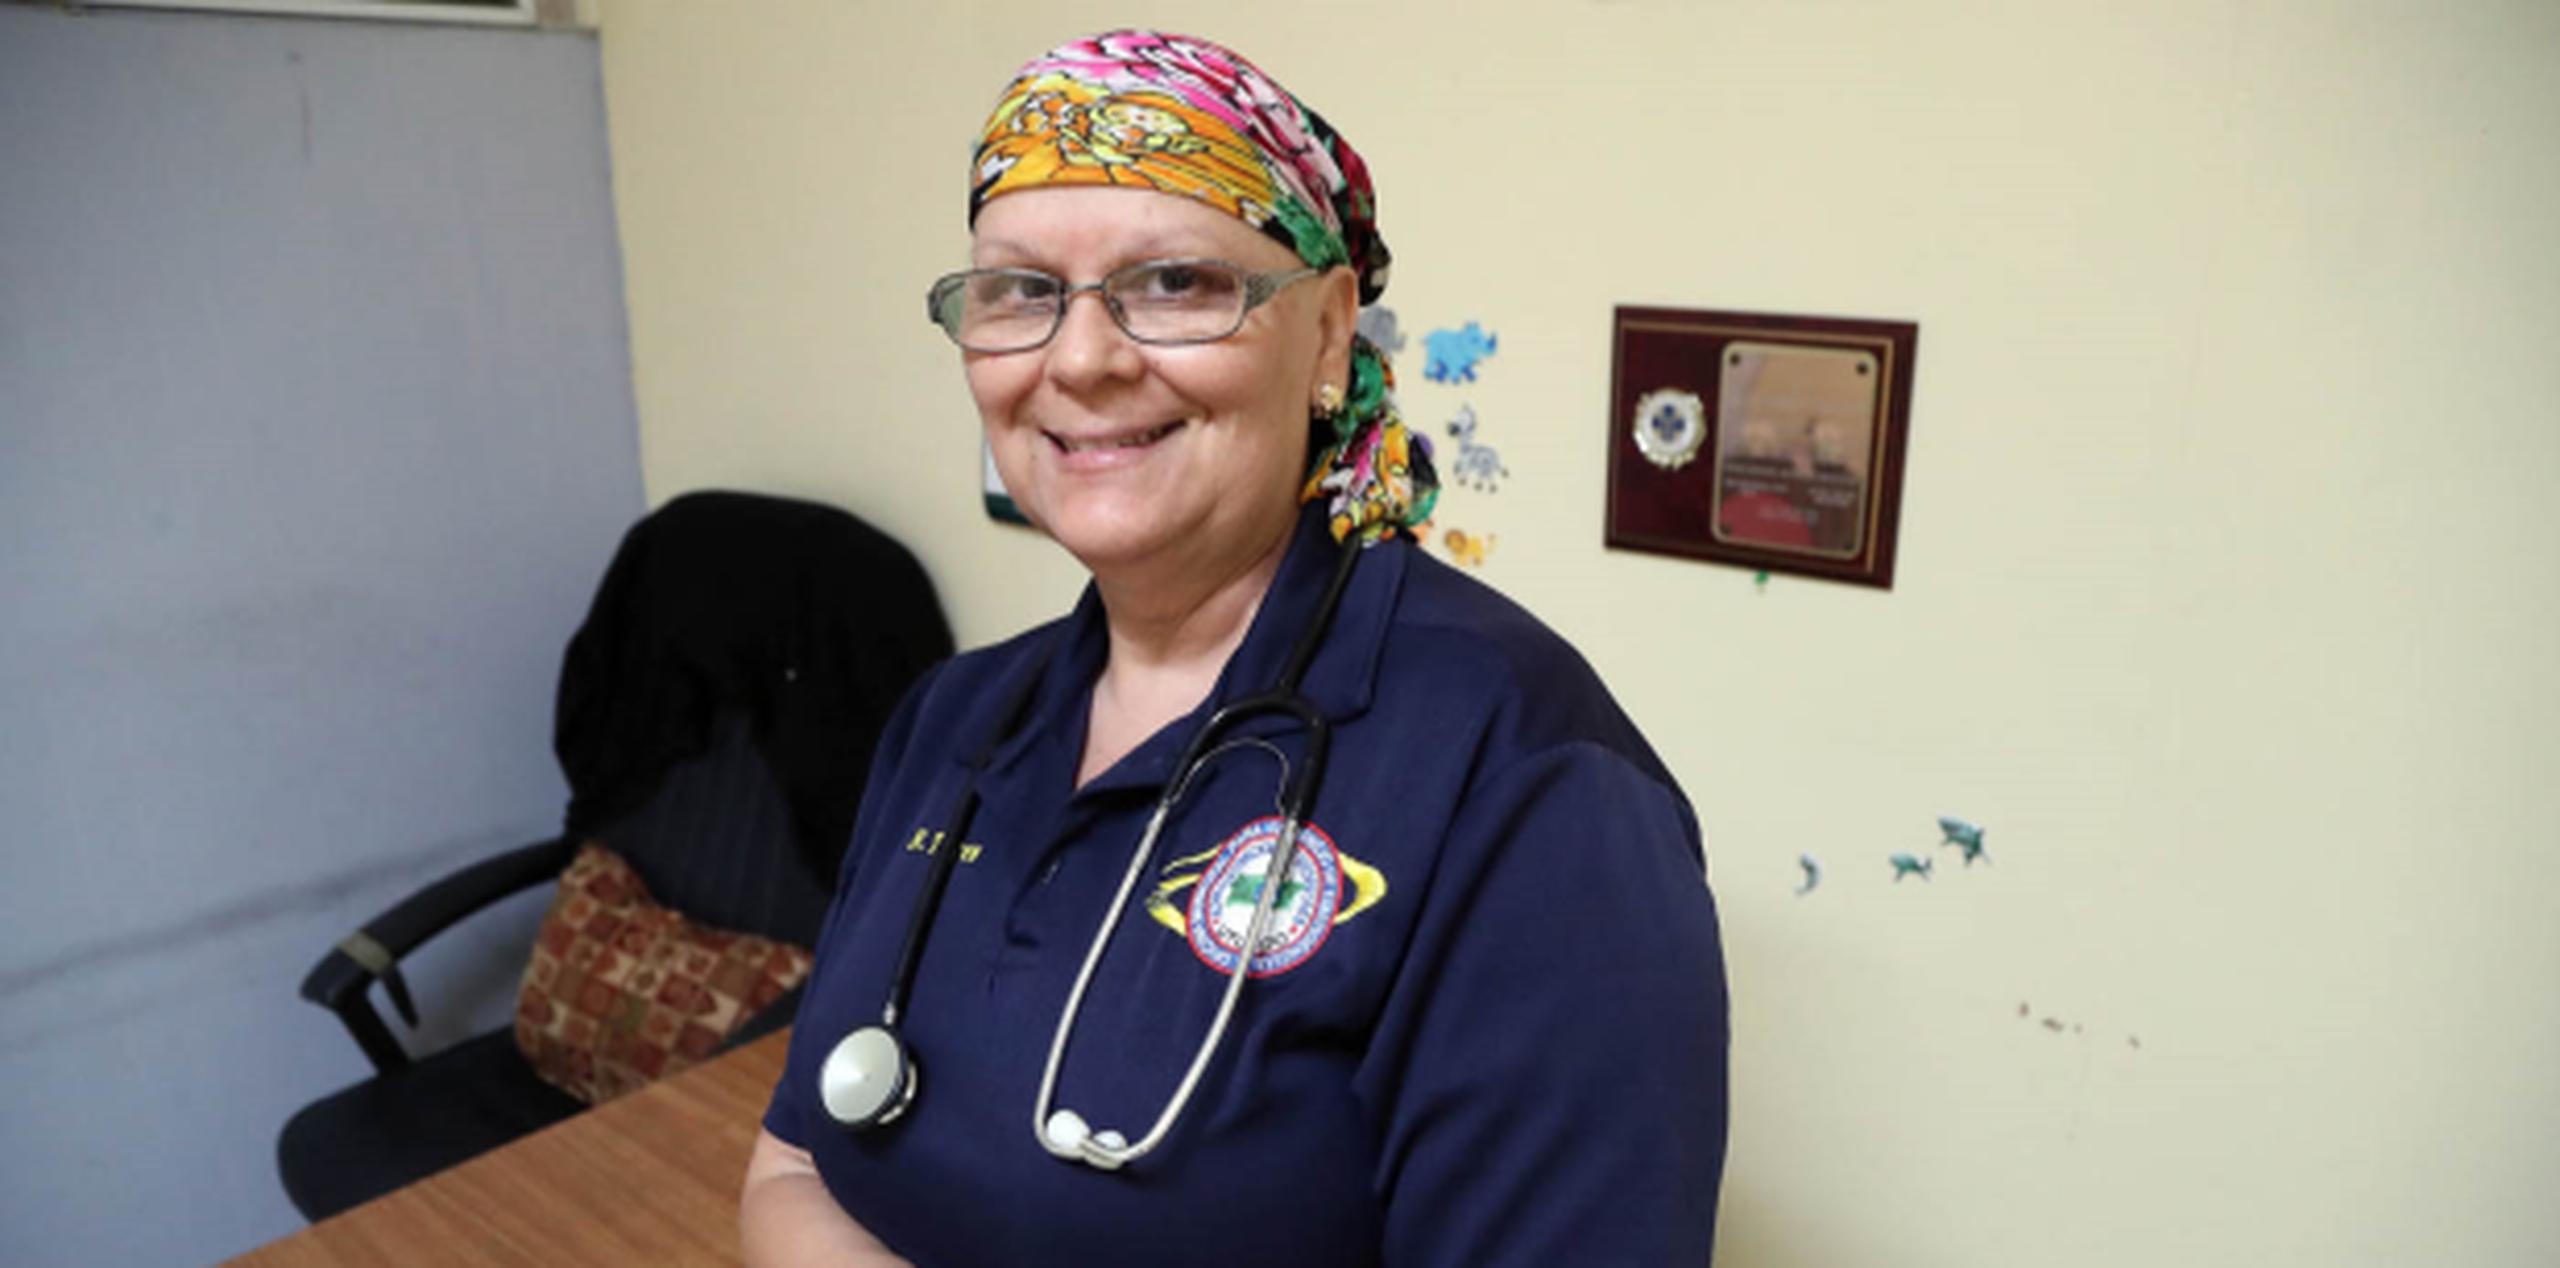 Nilsa Torres padece de cáncer y es empleada, hace 27 años, en la Defensa Civil de Utuado. Está laborando durante María. (david.villafane@gfrmedia.com)
